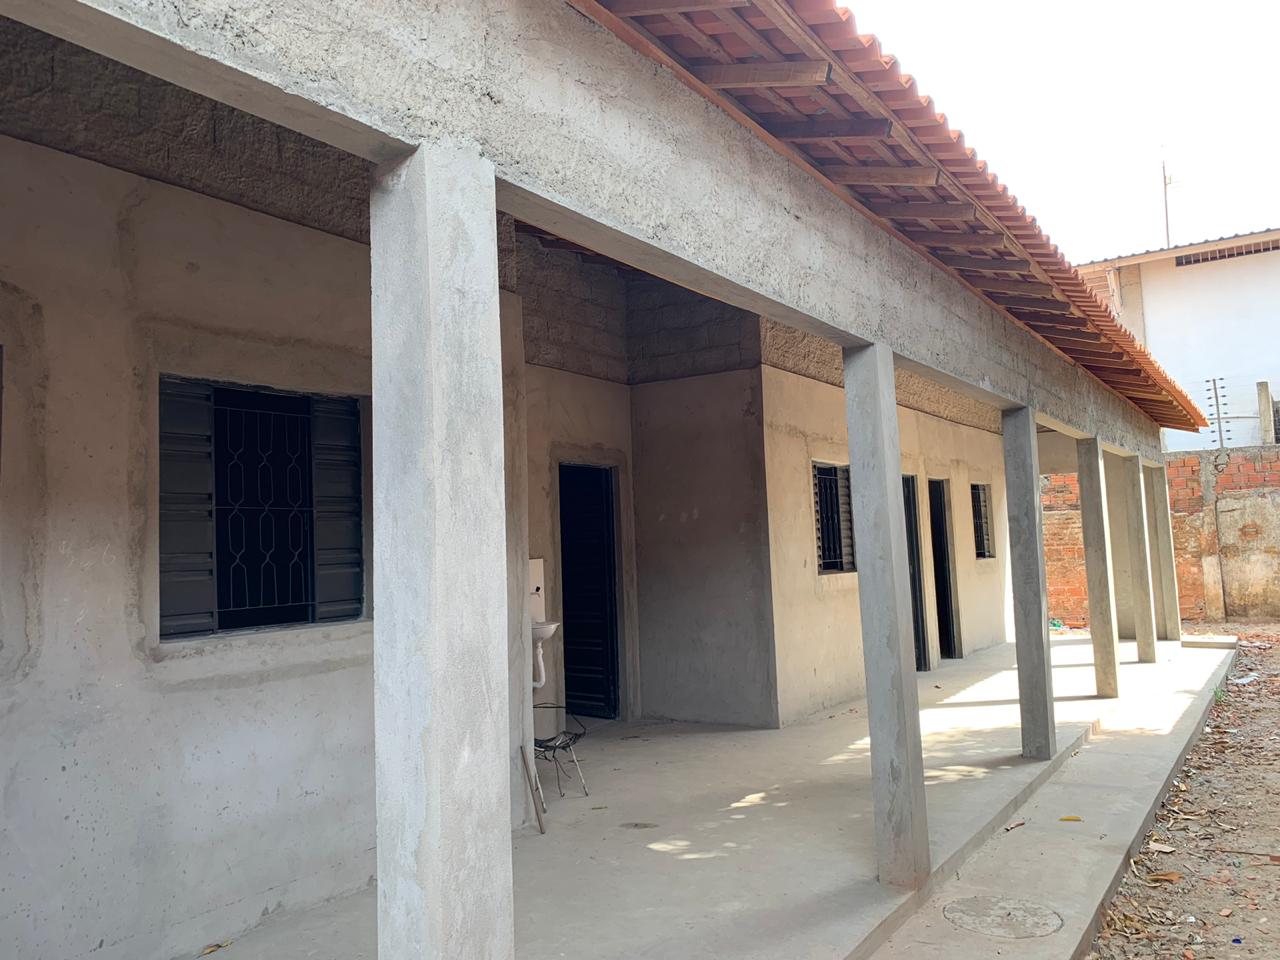 Casa reformada com recursos da Prefeitura de Teresina